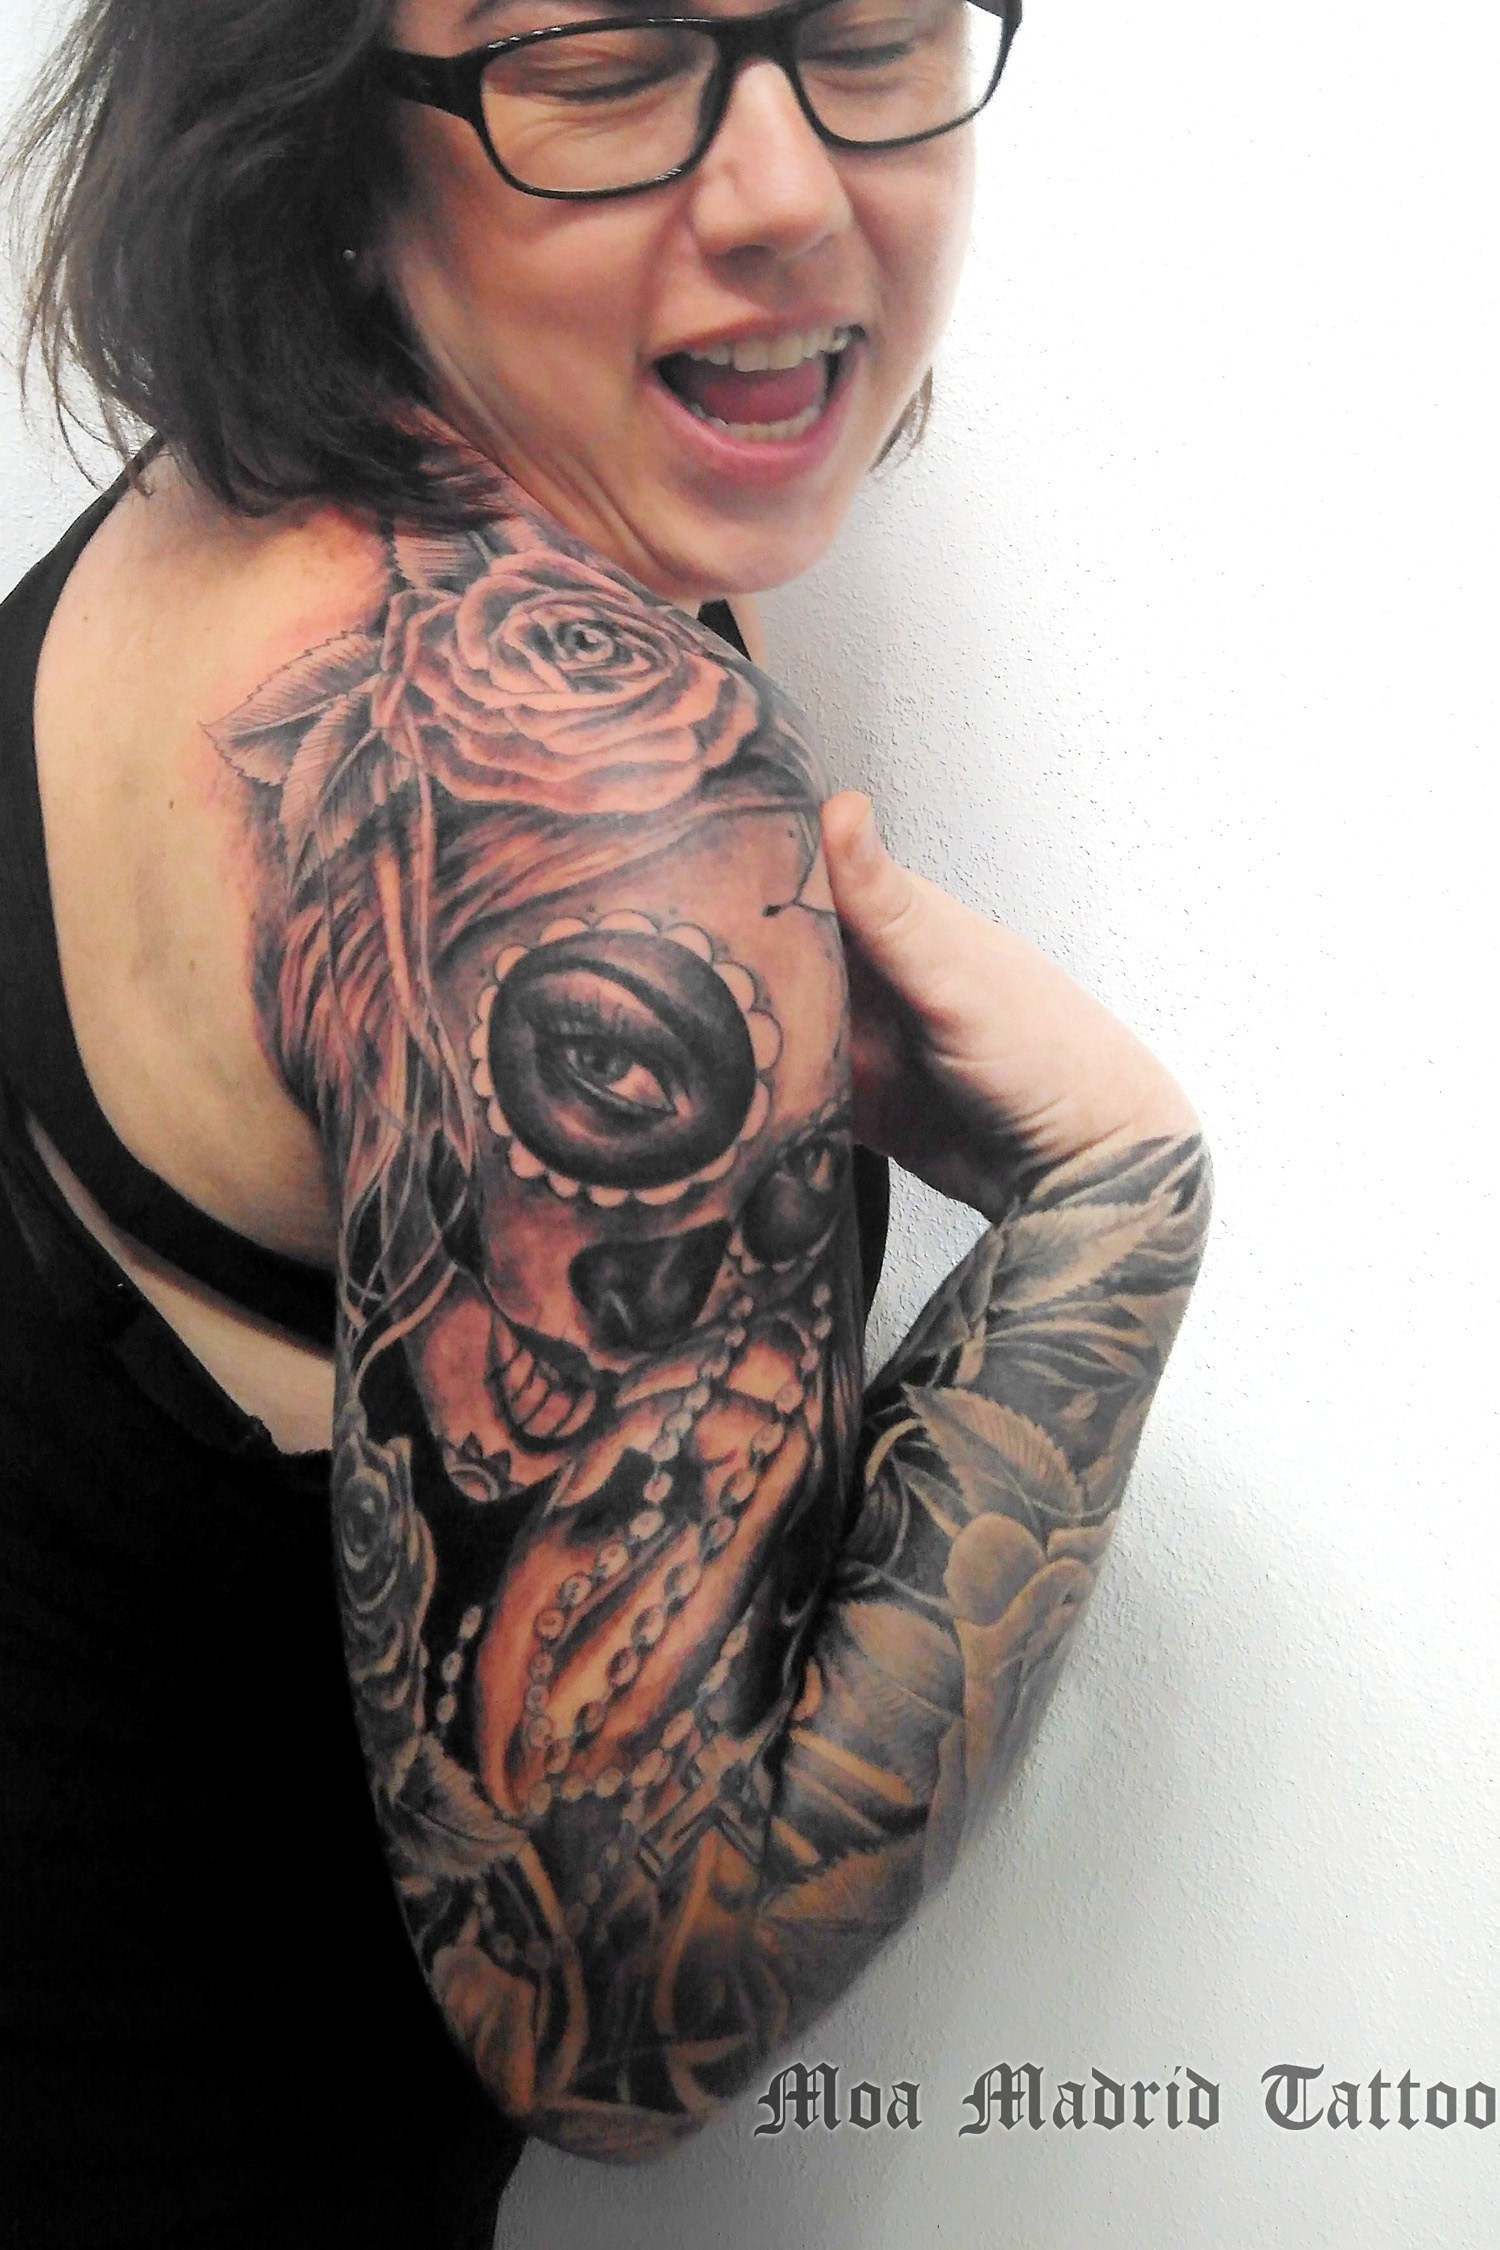 Ven a mi estudio de Madrid a llenarte tu brazo de tatuajes